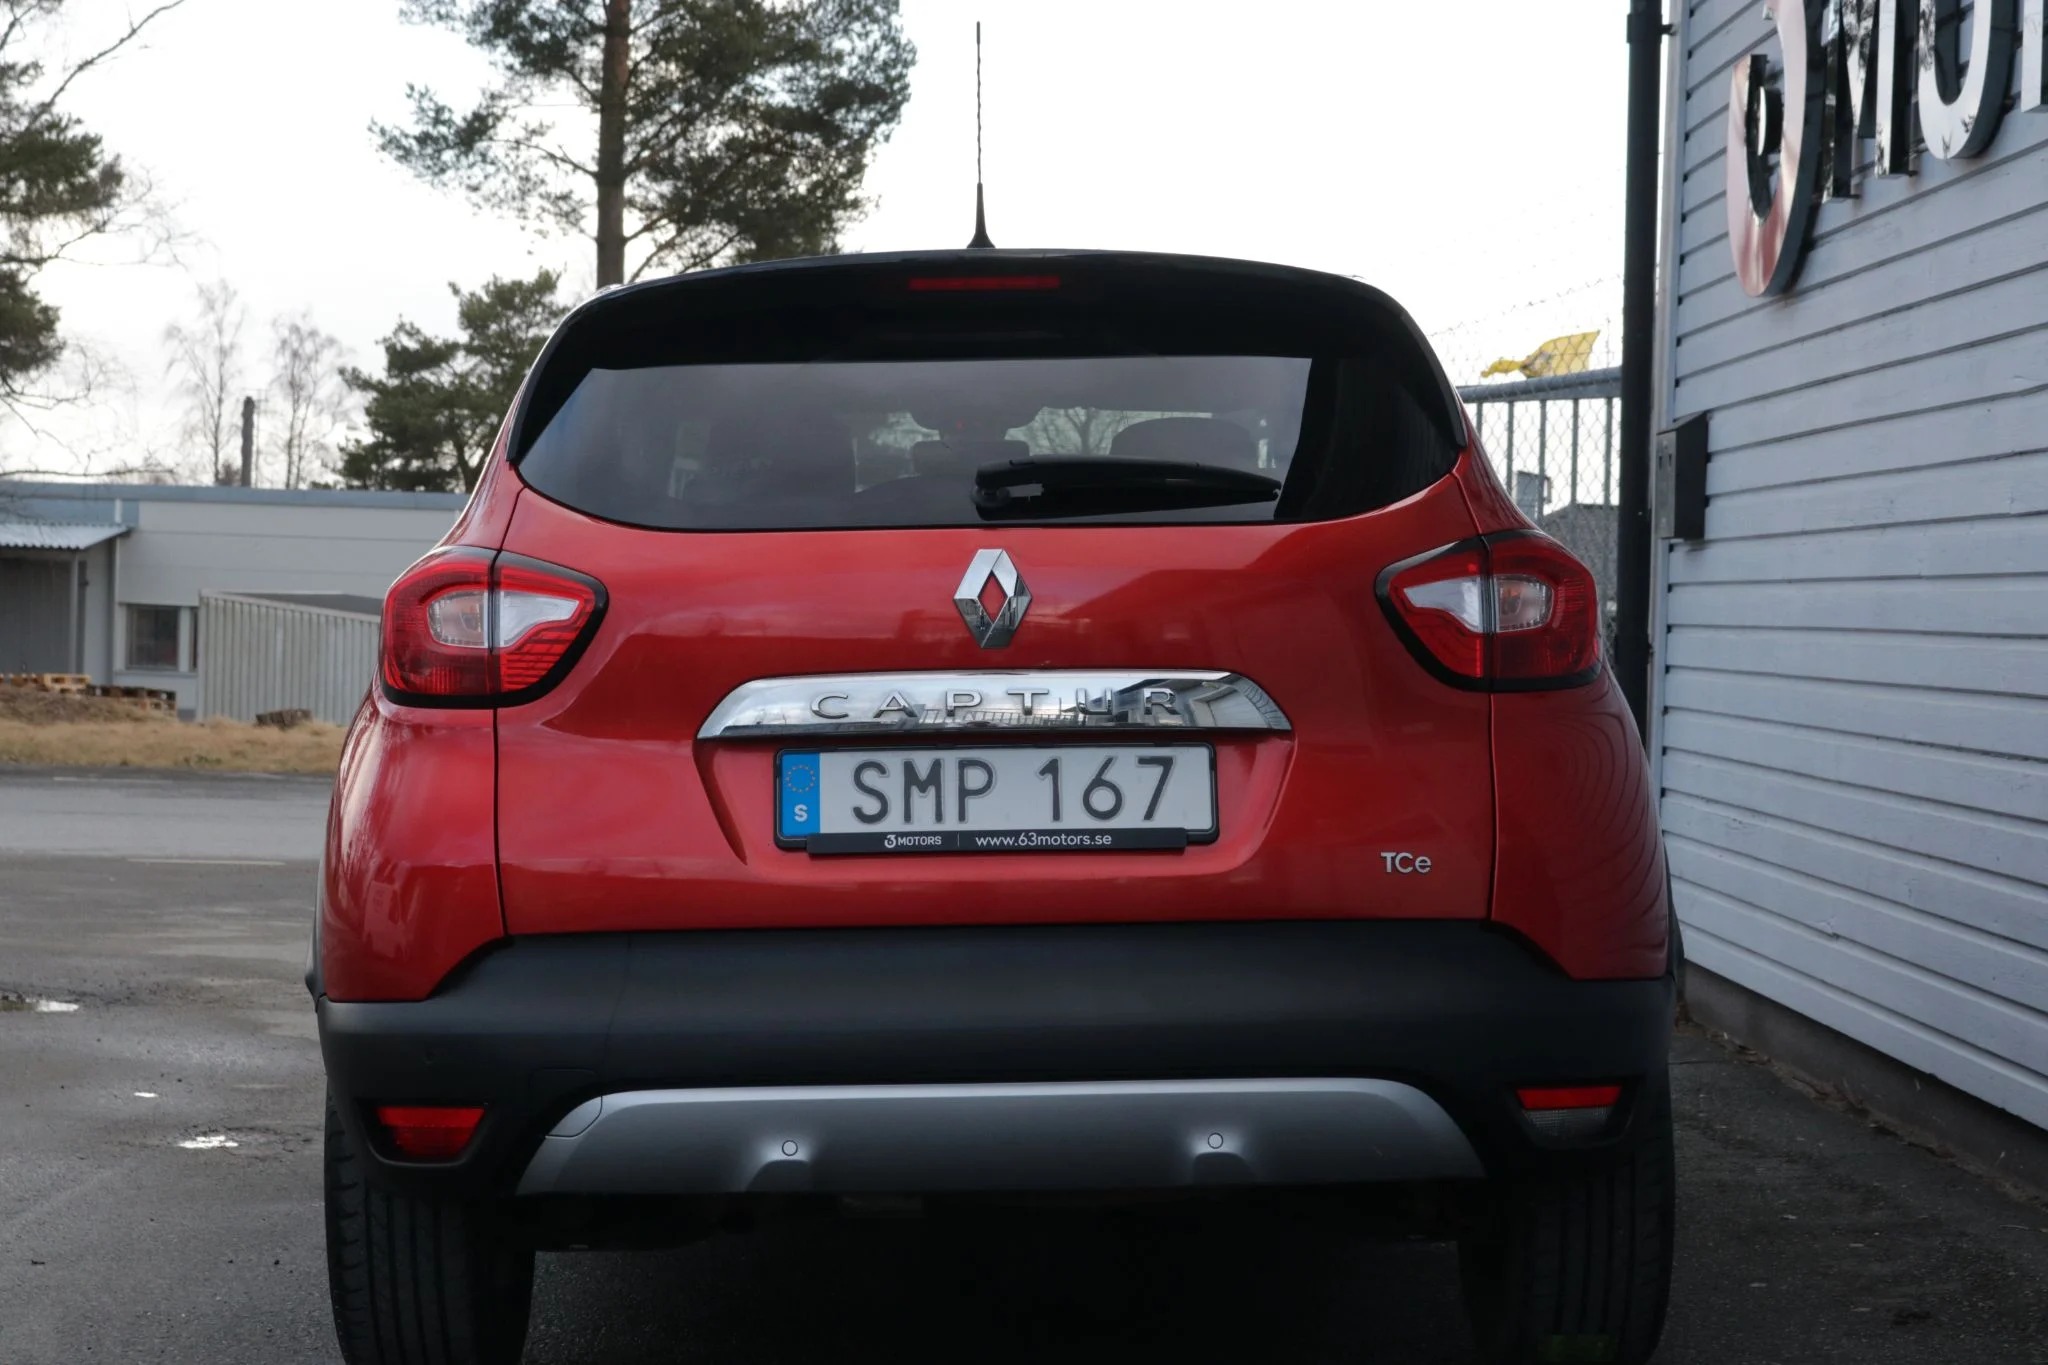 Renault Captur 1.2 TCe EDC, 120hk, 2015